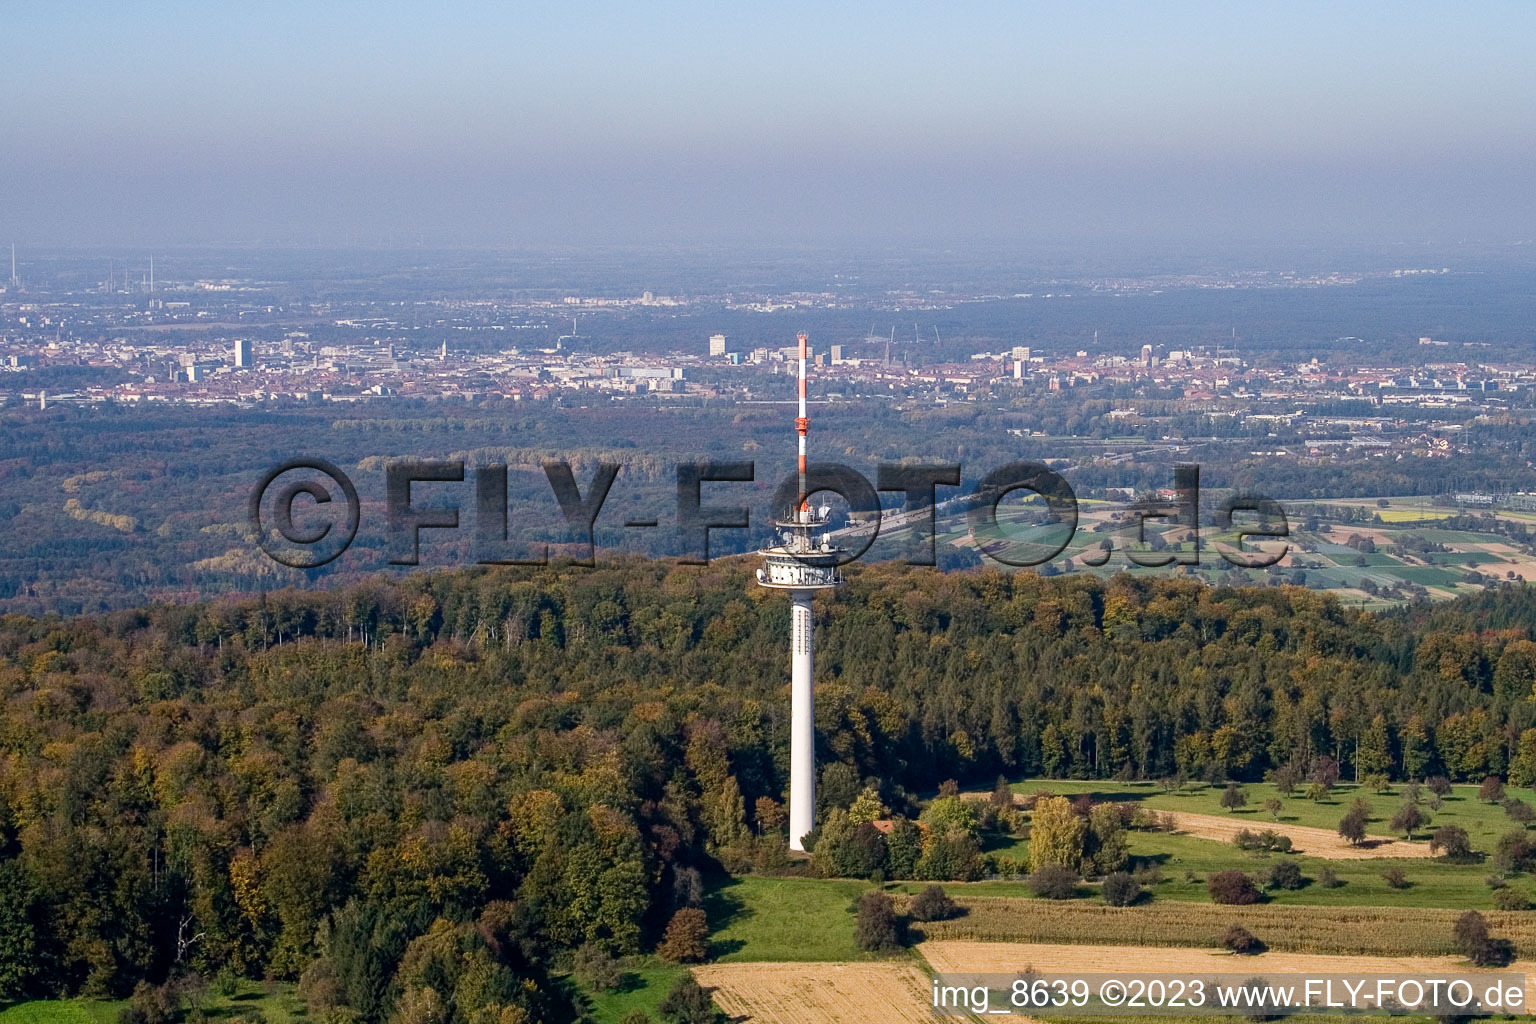 Ortsteil Grünwettersbach in Karlsruhe im Bundesland Baden-Württemberg, Deutschland aus der Luft betrachtet